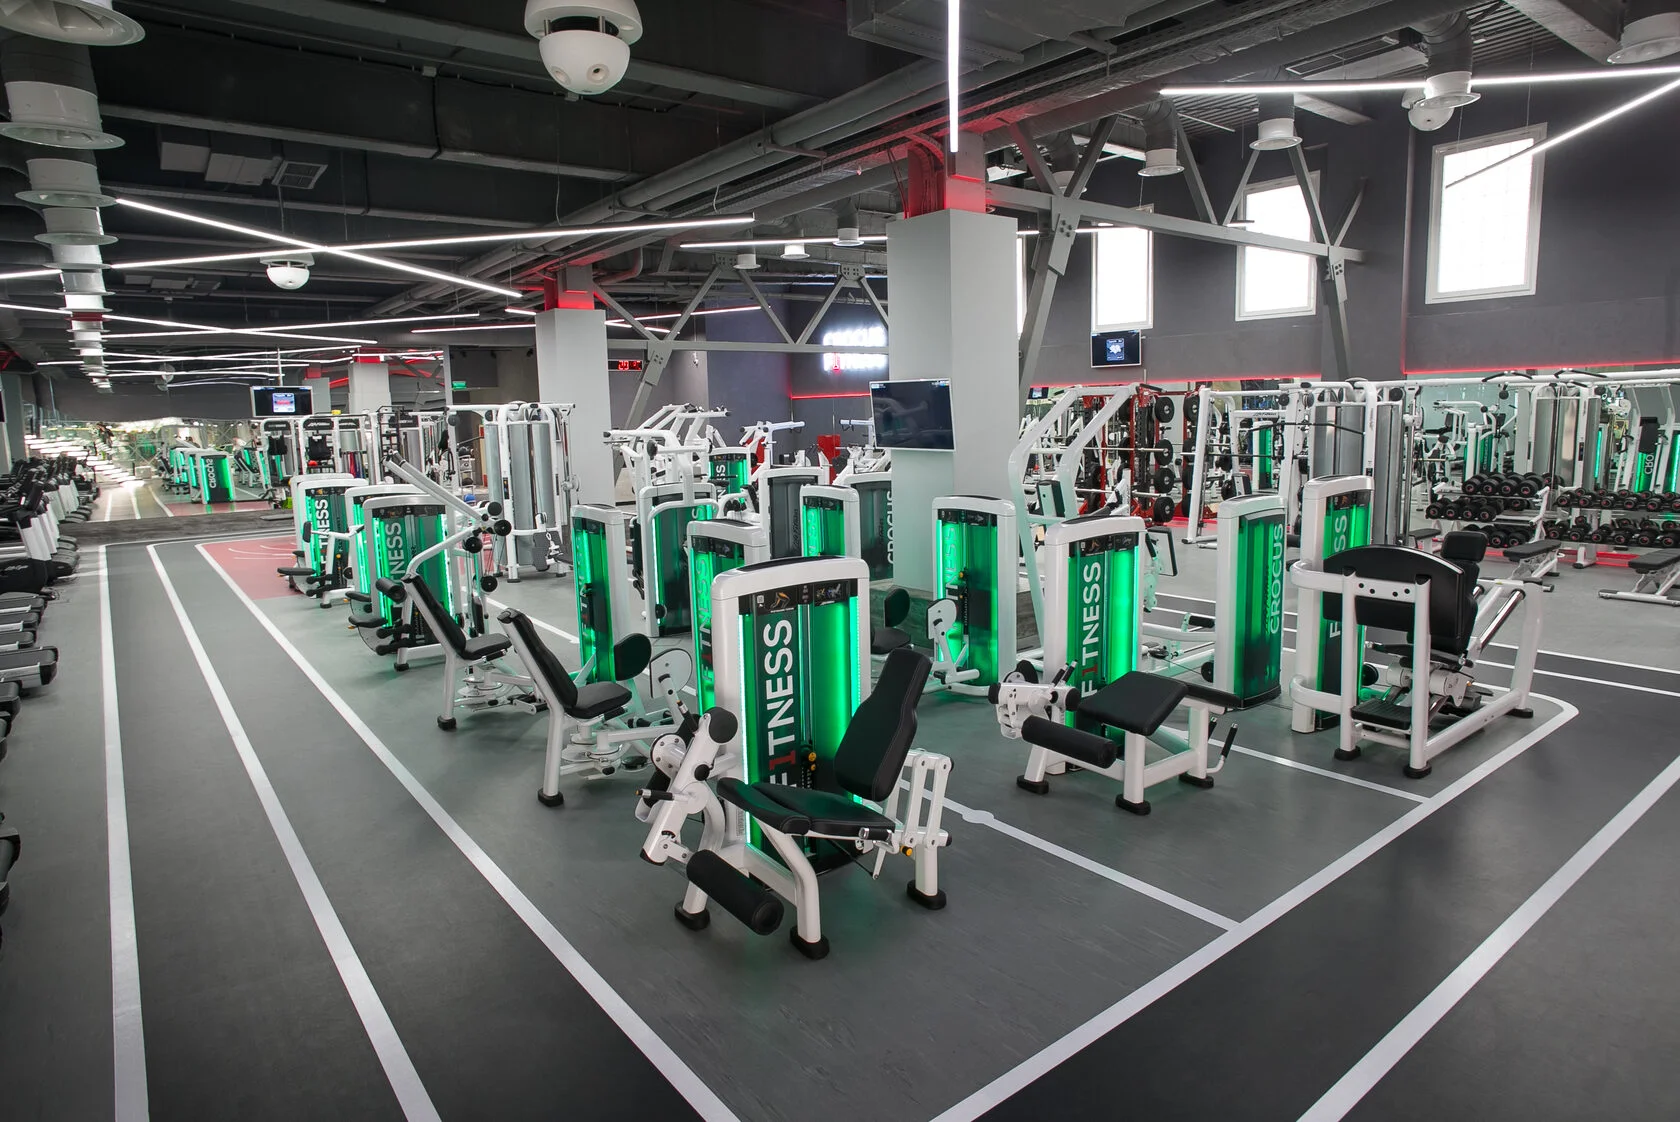 Спортивный зал Crocus Fitness